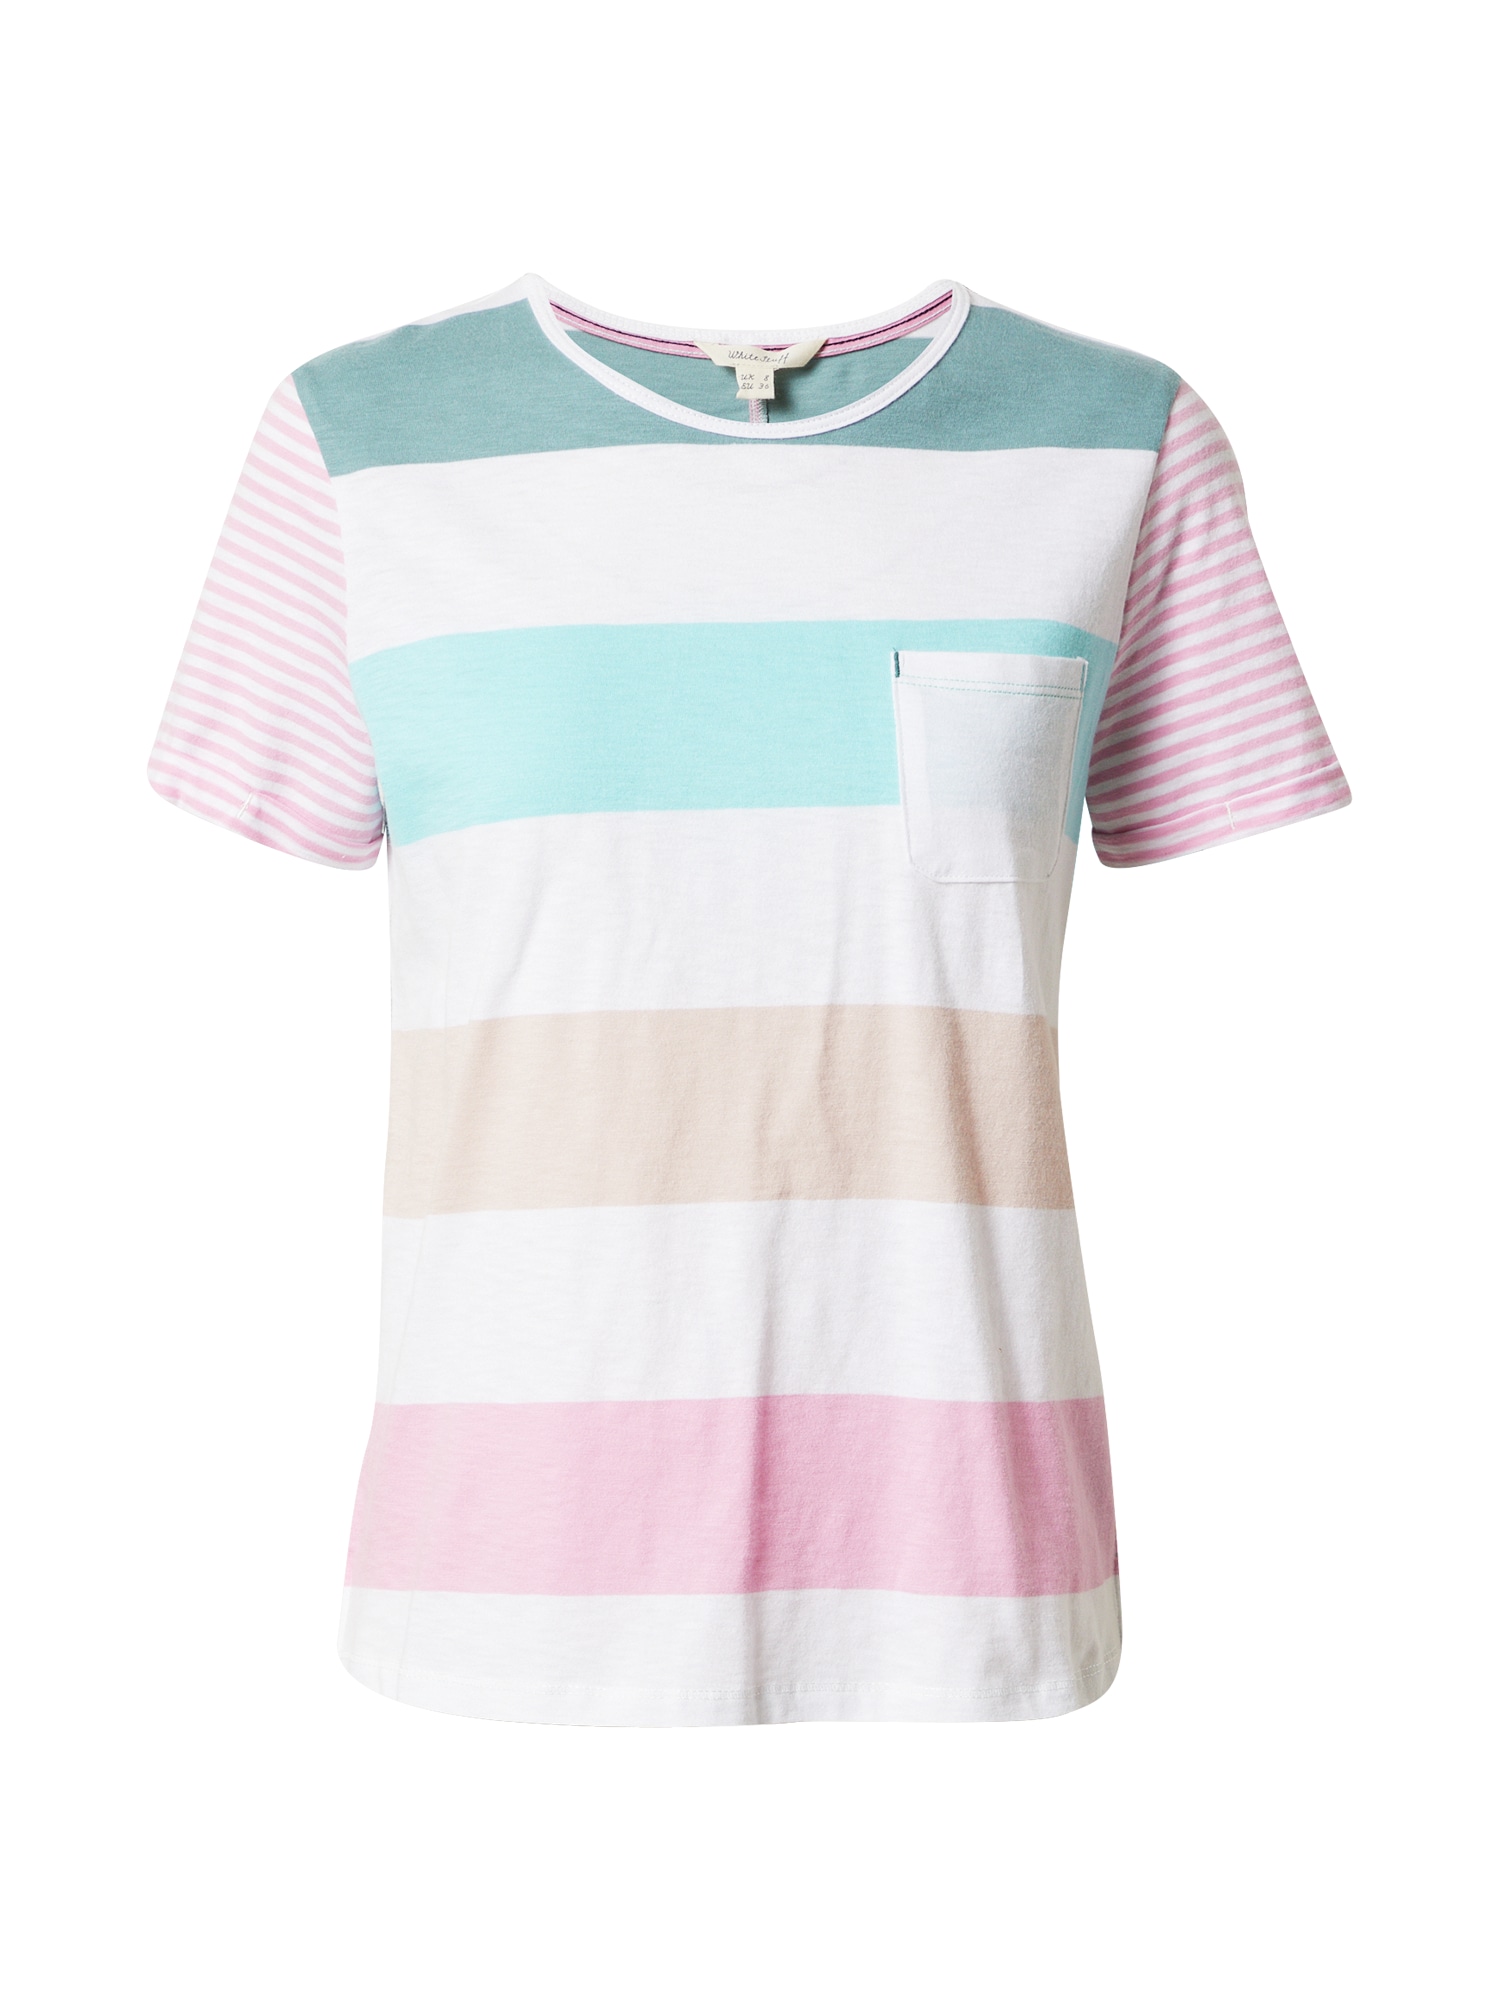 WHITE STUFF Marškinėliai šviesiai rožinė / pudros spalva / balta / pastelinė mėlyna / turkio spalva